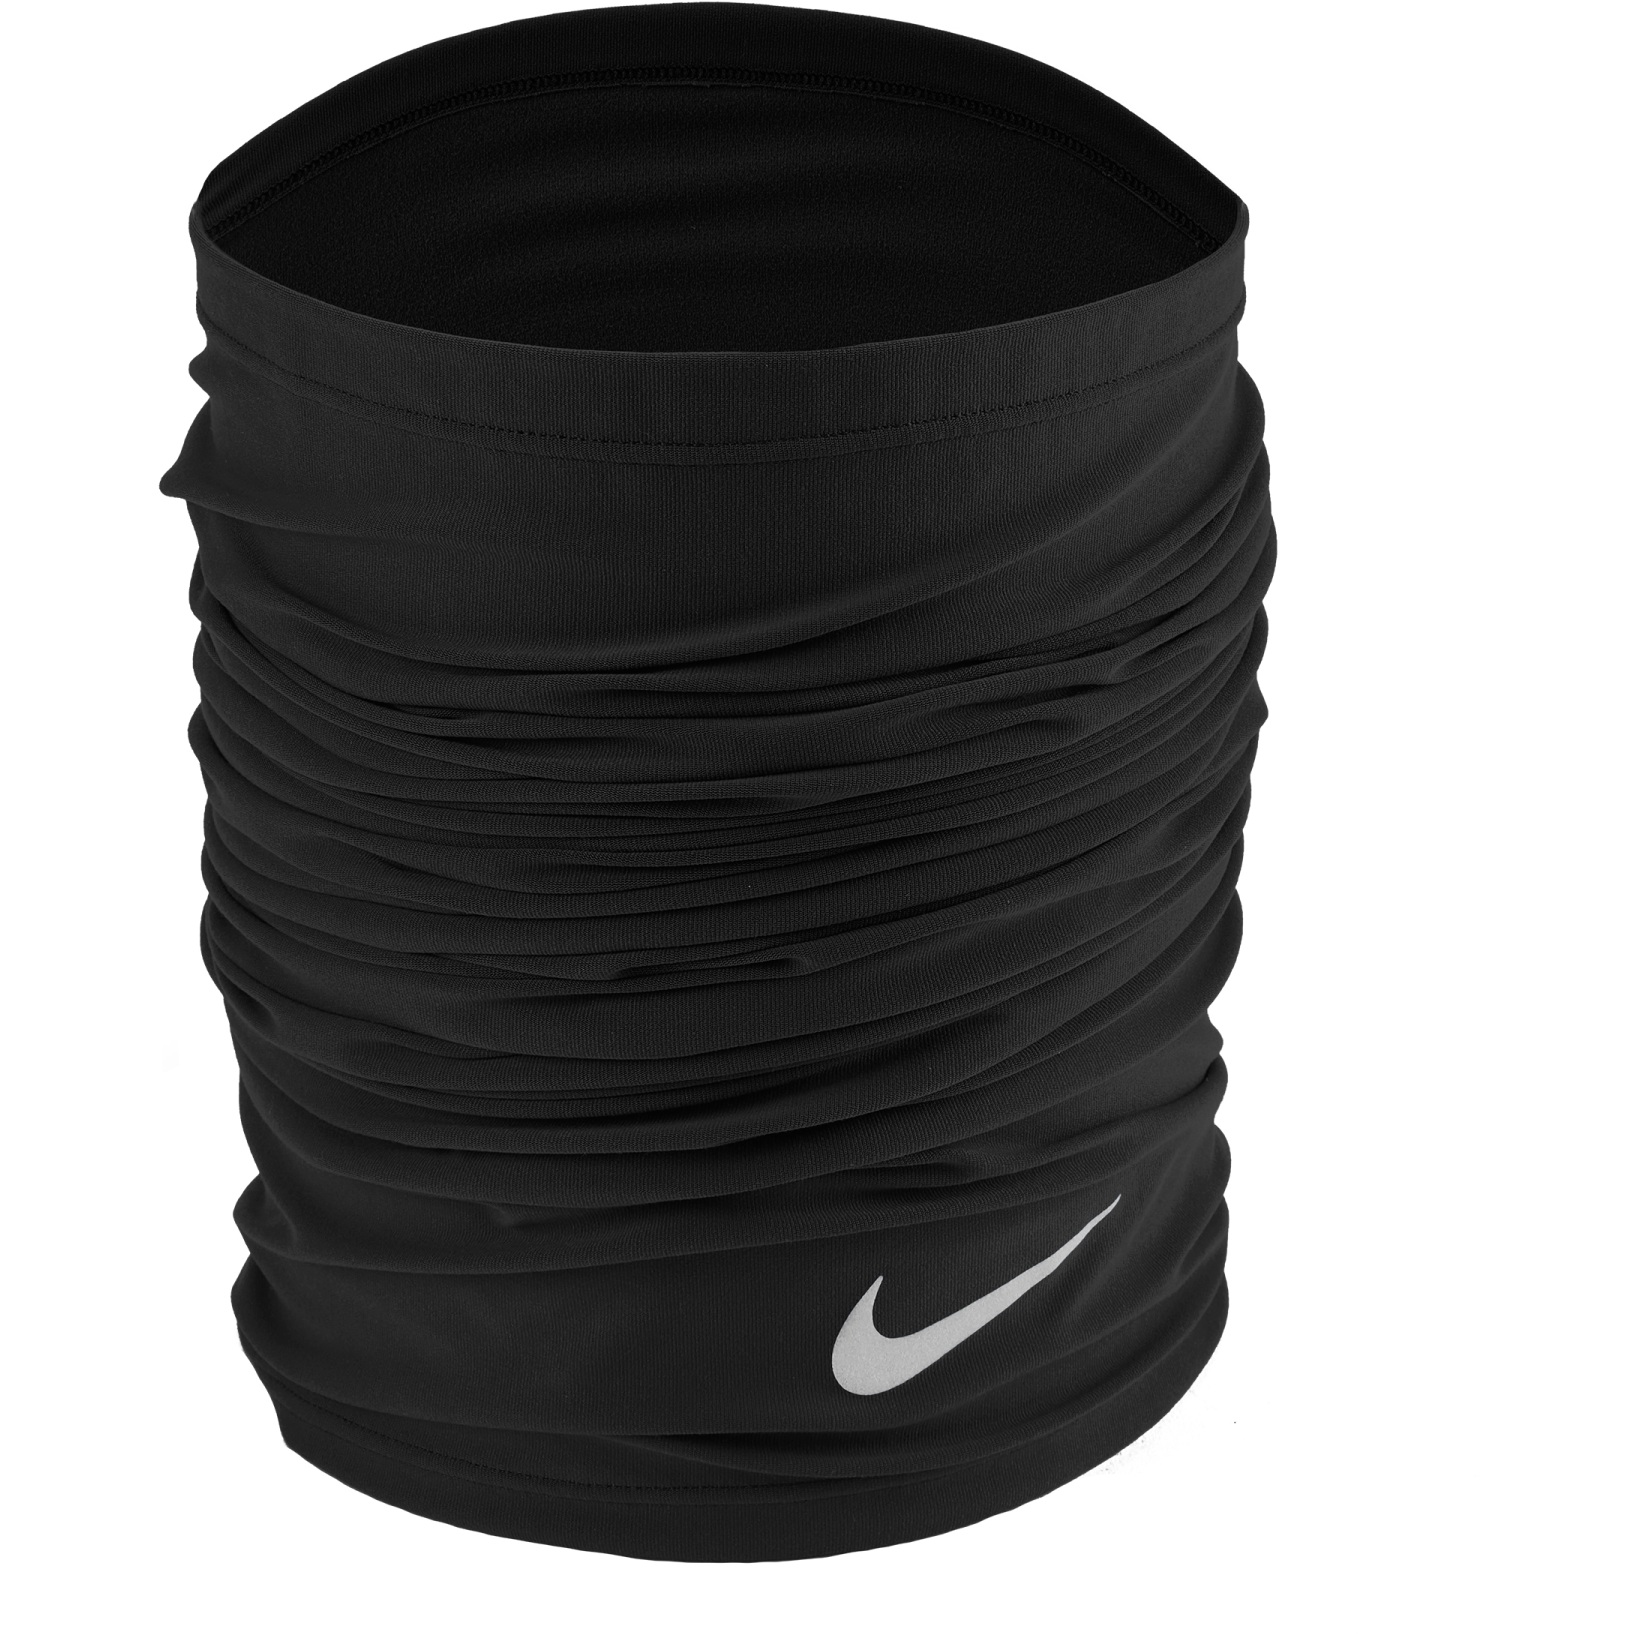 Produktbild von Nike Dri-Fit Wrap 2.0 - Multifunktionstuch - schwarz/silber 042